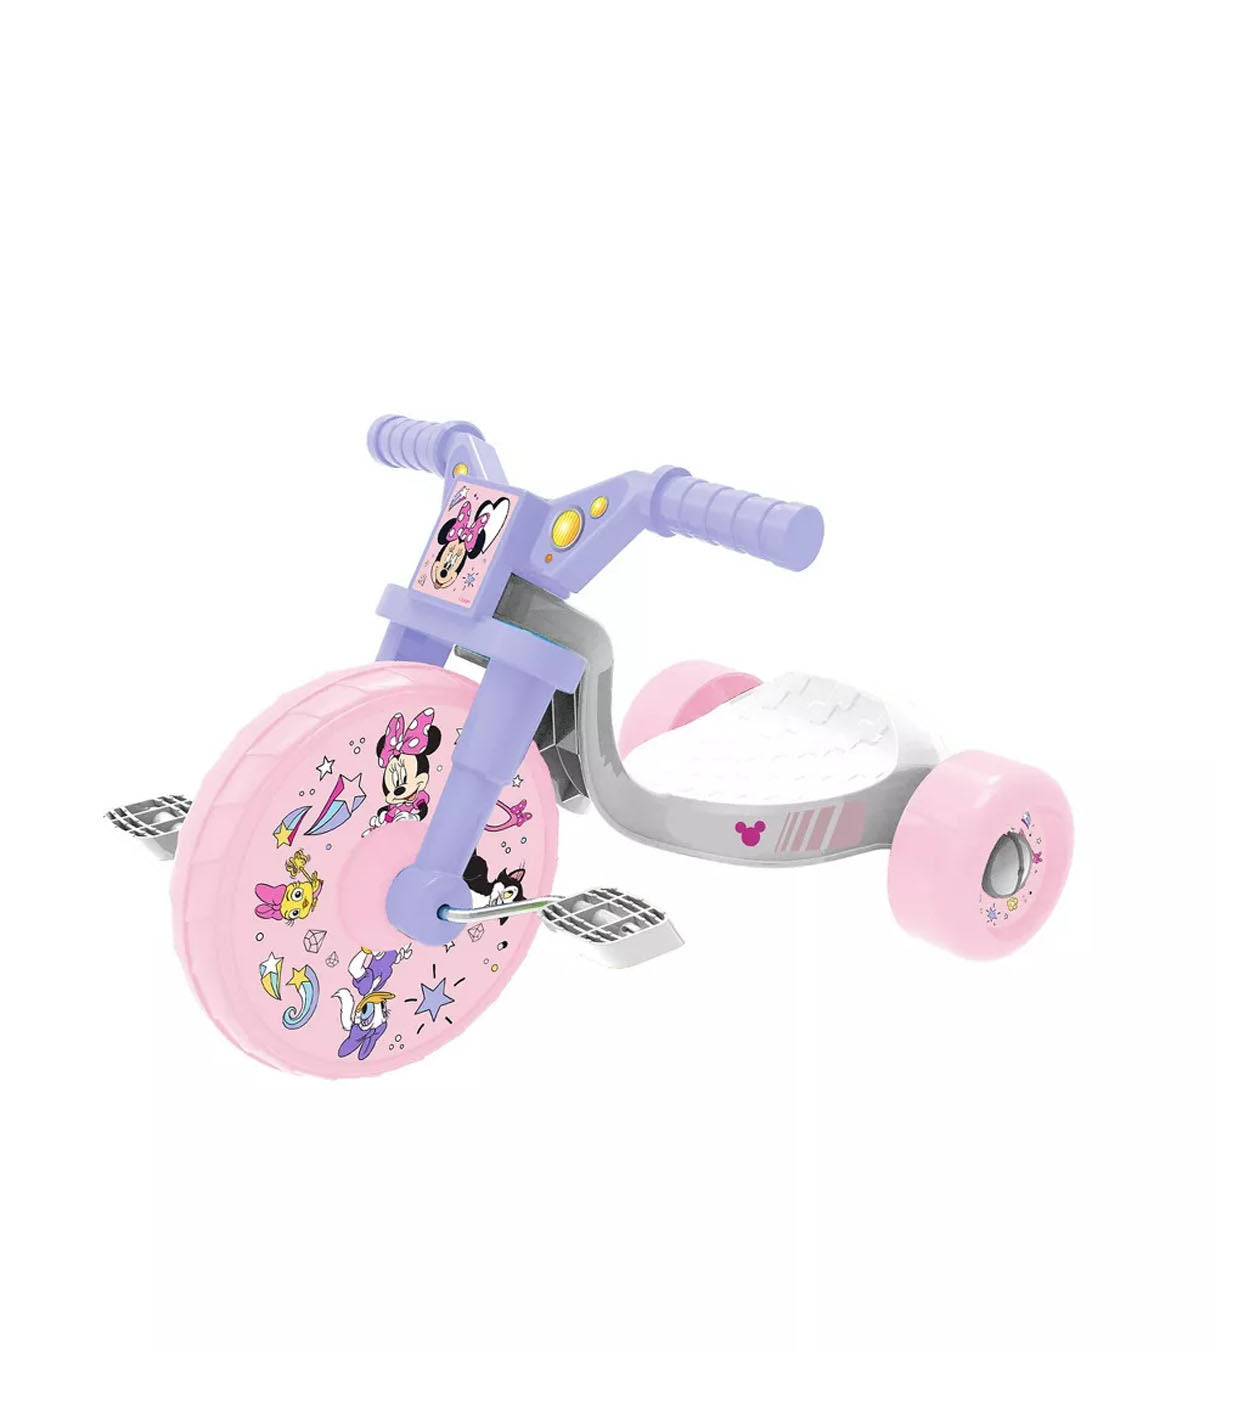 Triciclo infantil Minnie Mouse con volante y sonido electrónico